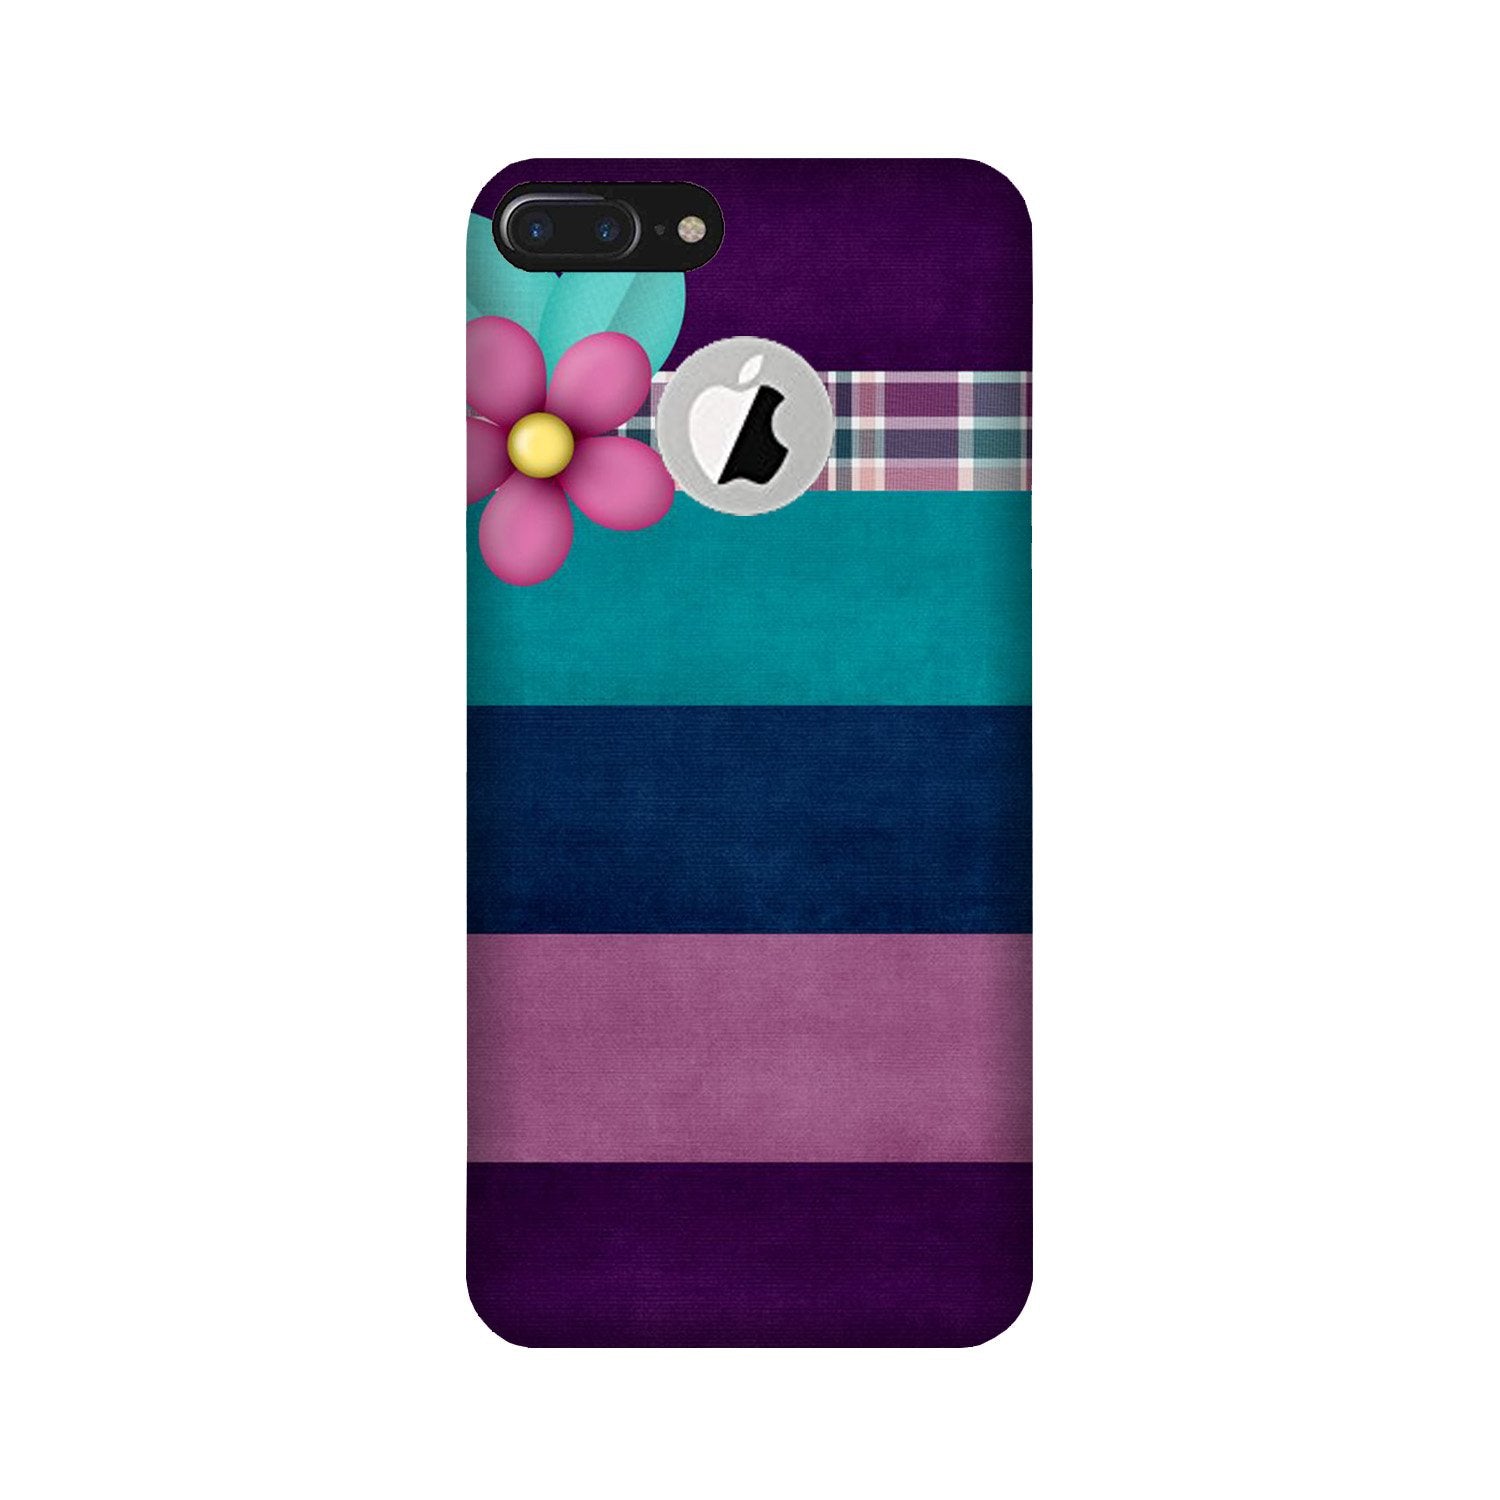 Purple Blue Case for iPhone 7 Plus logo cut